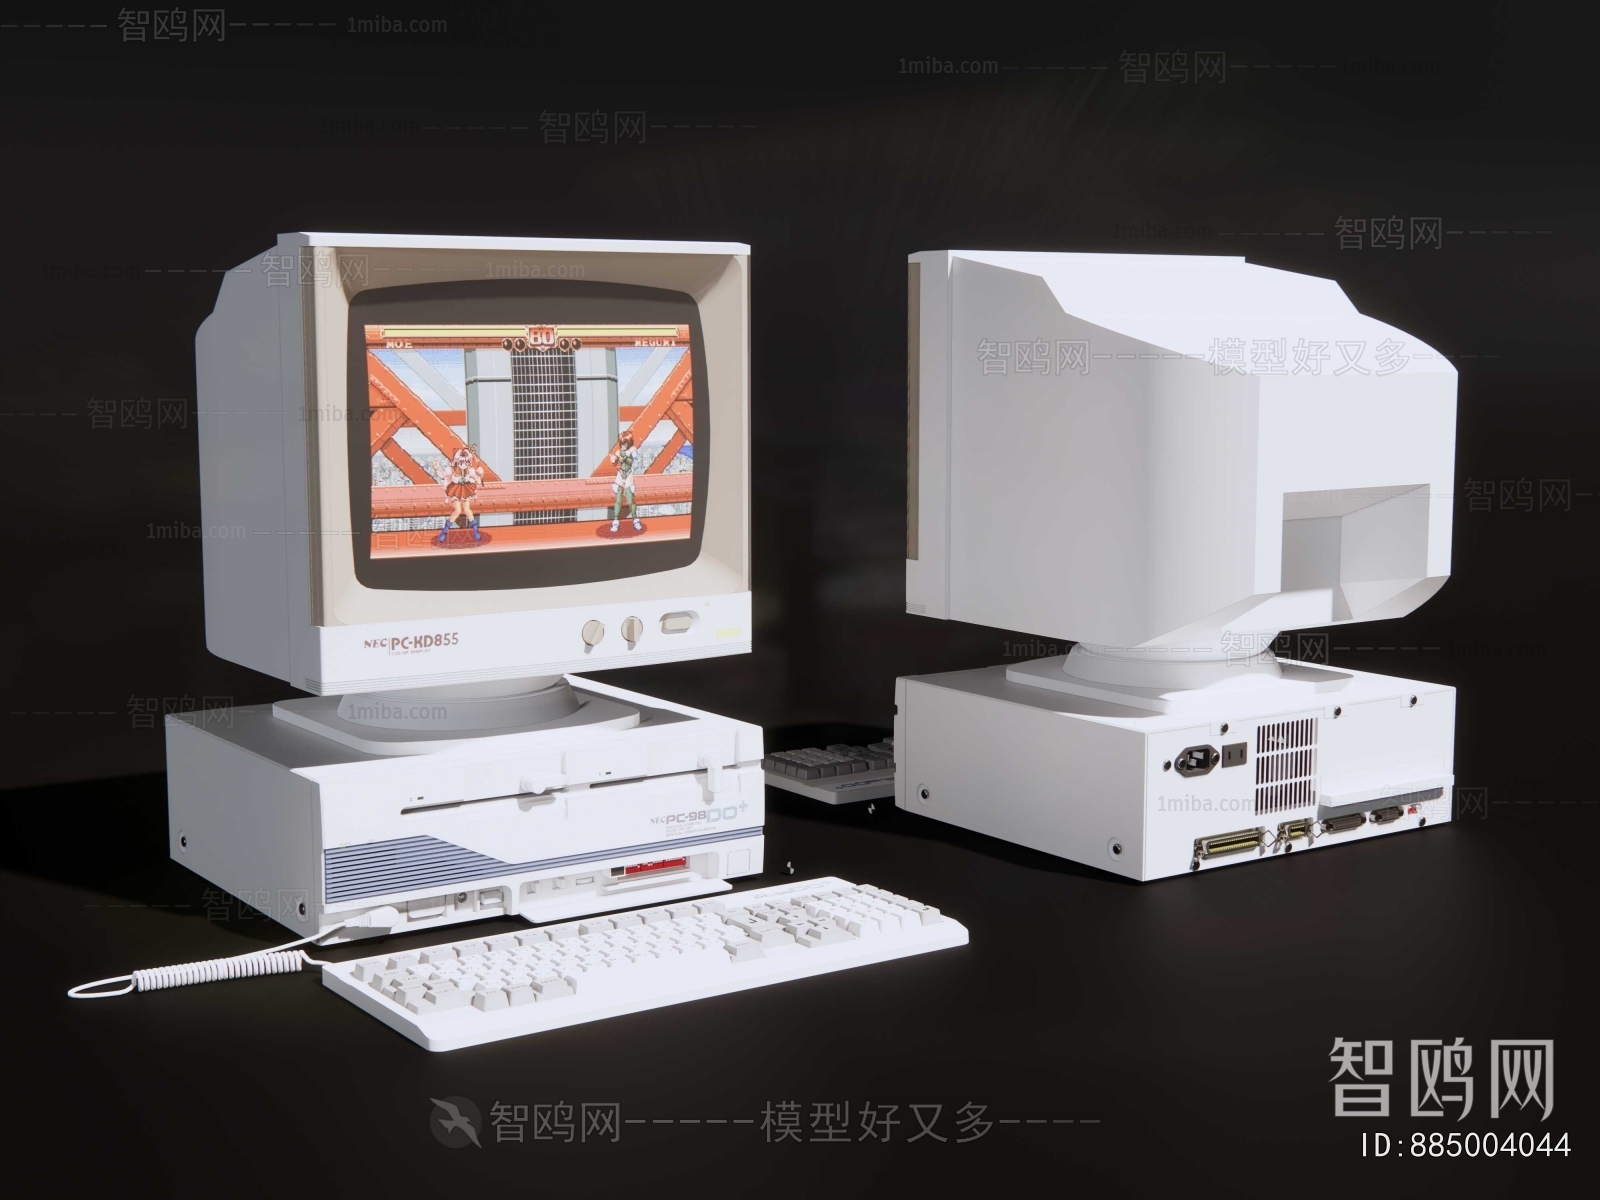 Modern Computer/Computer Screen